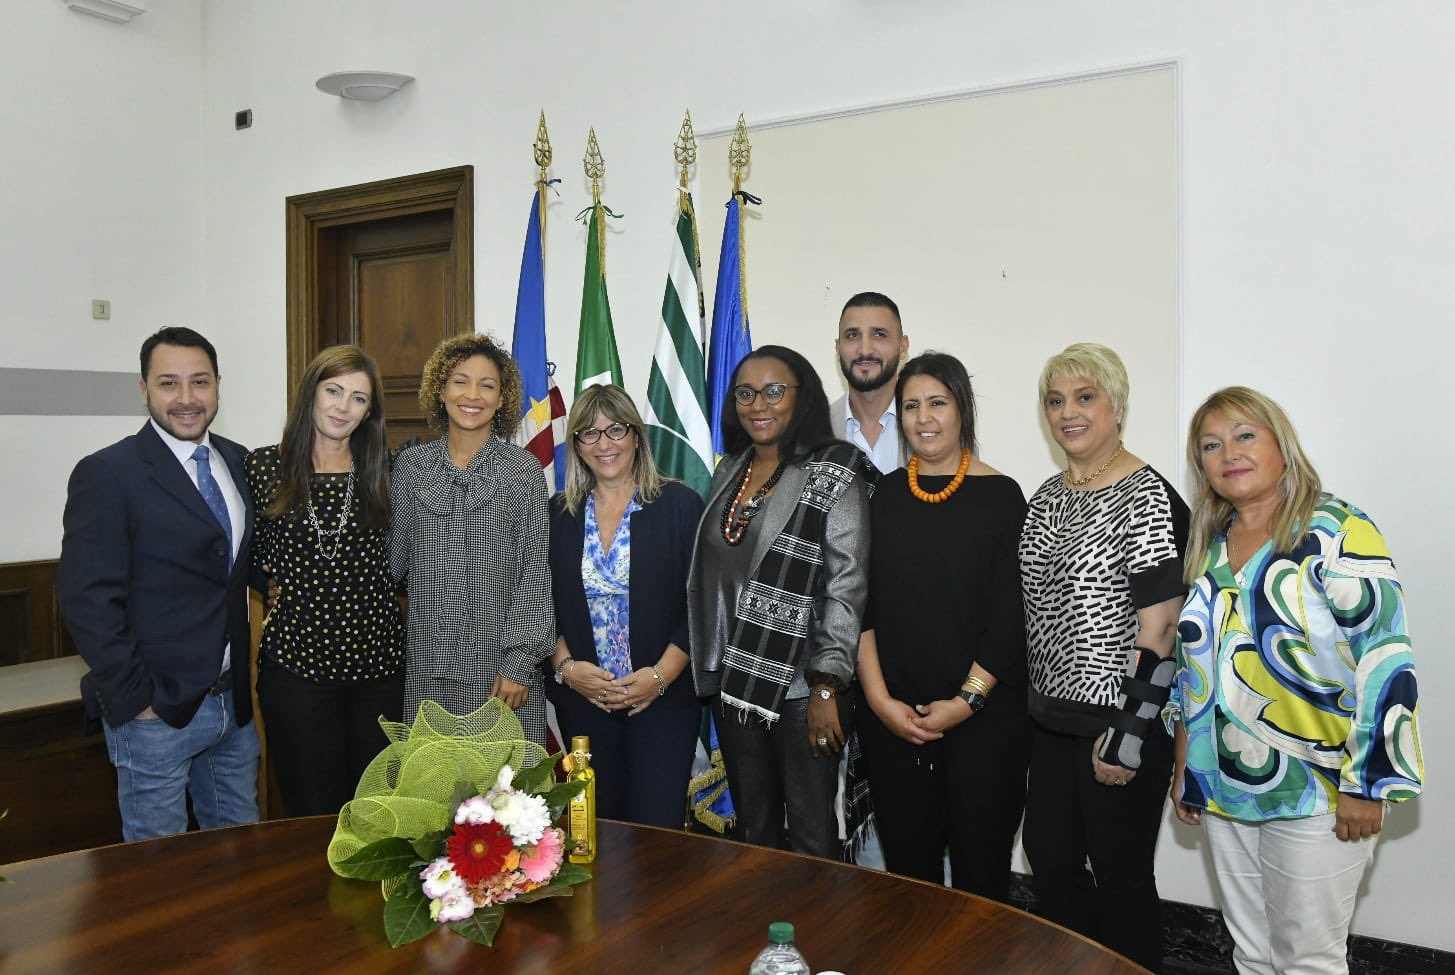 ANOLF e CISL incontrano la First Lady della Repubblica di Capo Verde. Le immagini